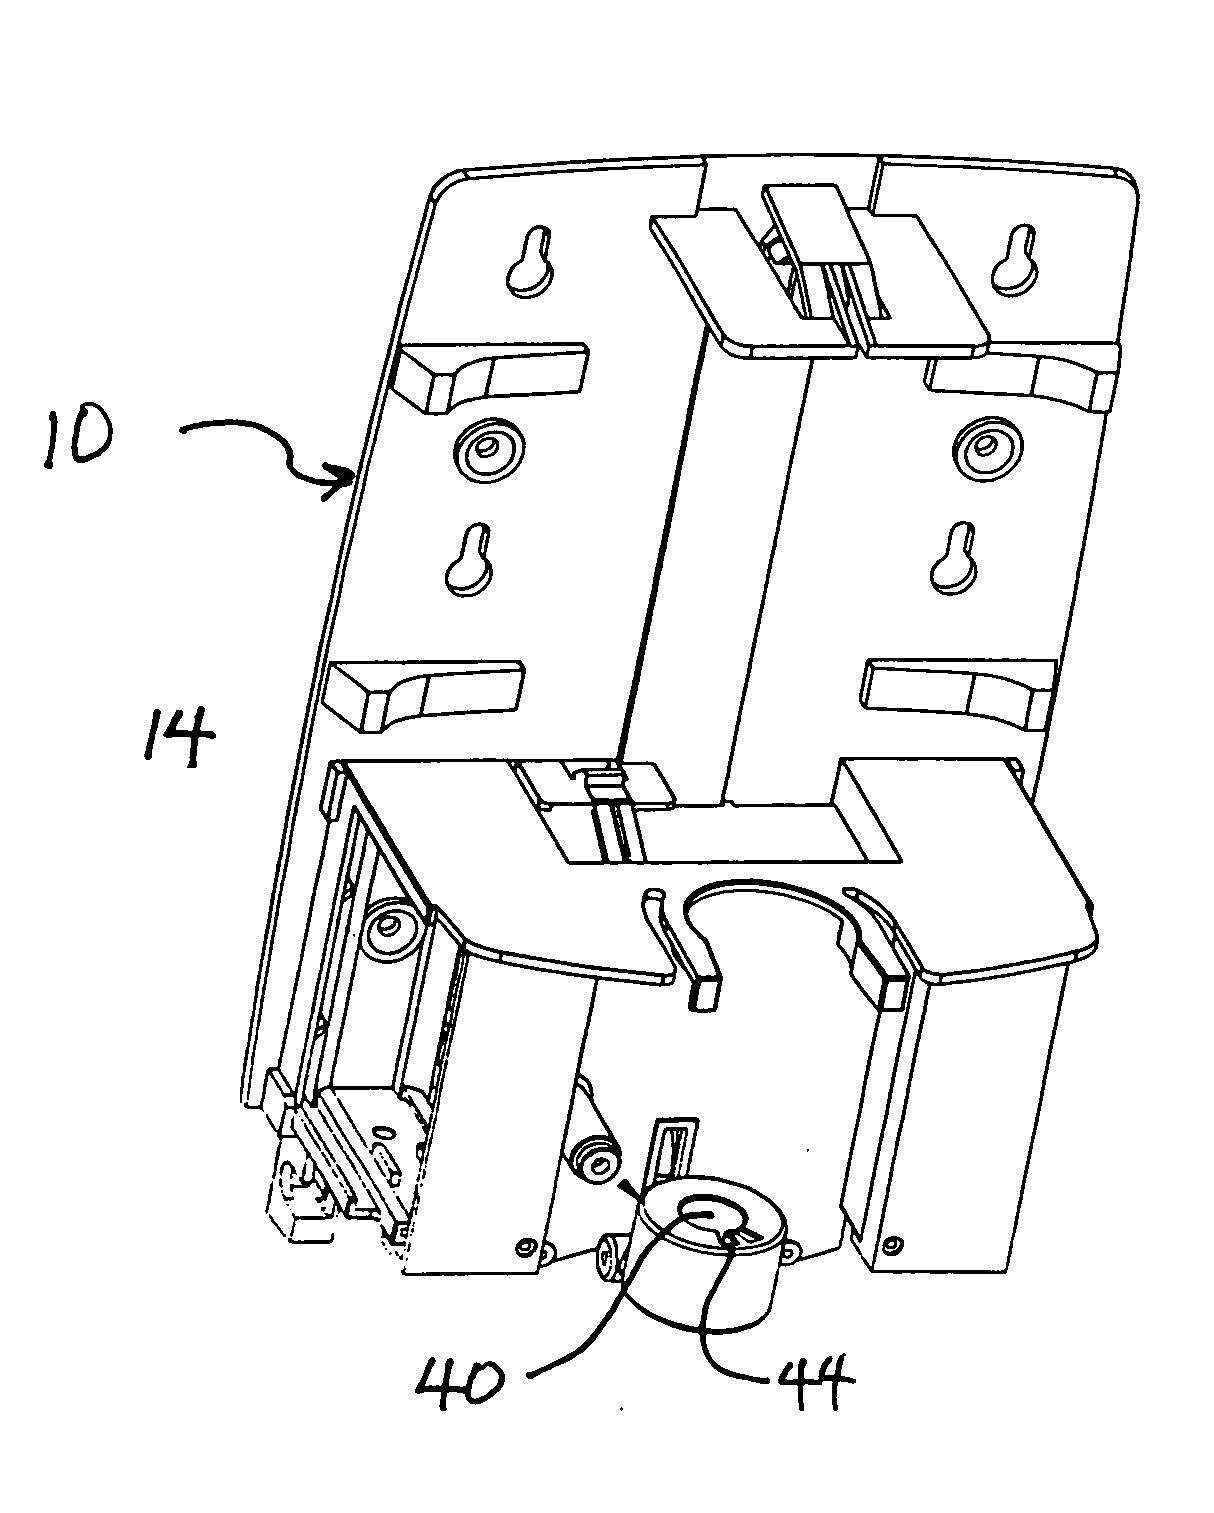 Keyed dispensing cartridge system